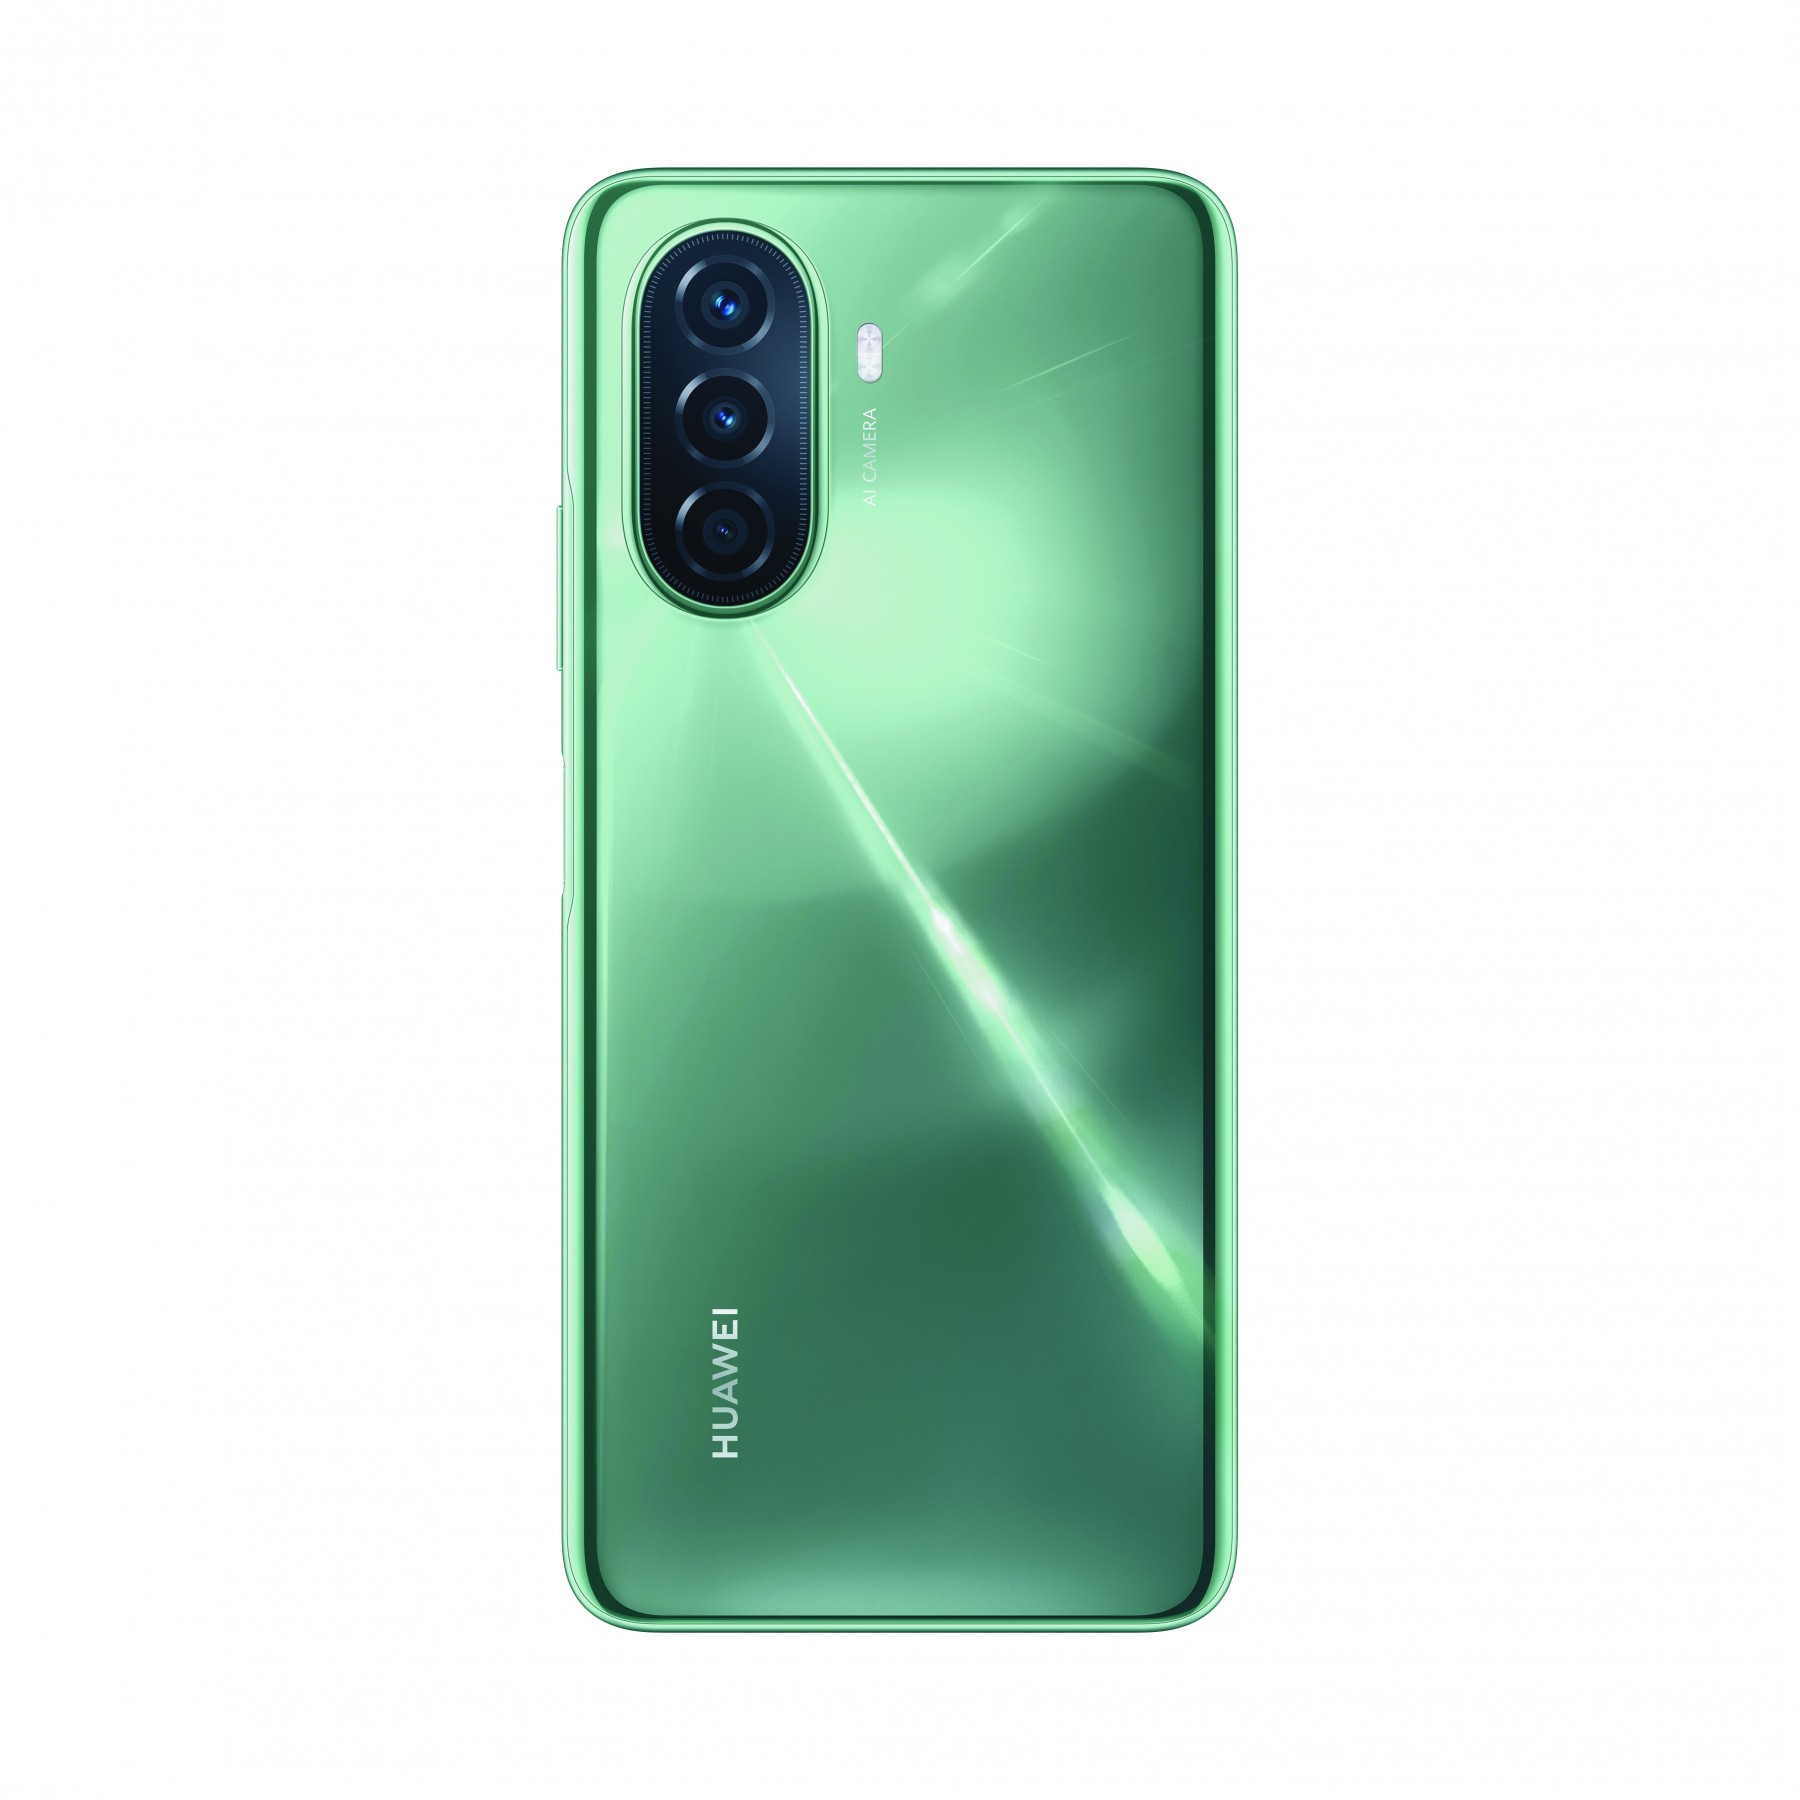 Huawei Nova Y70 (Cell C)